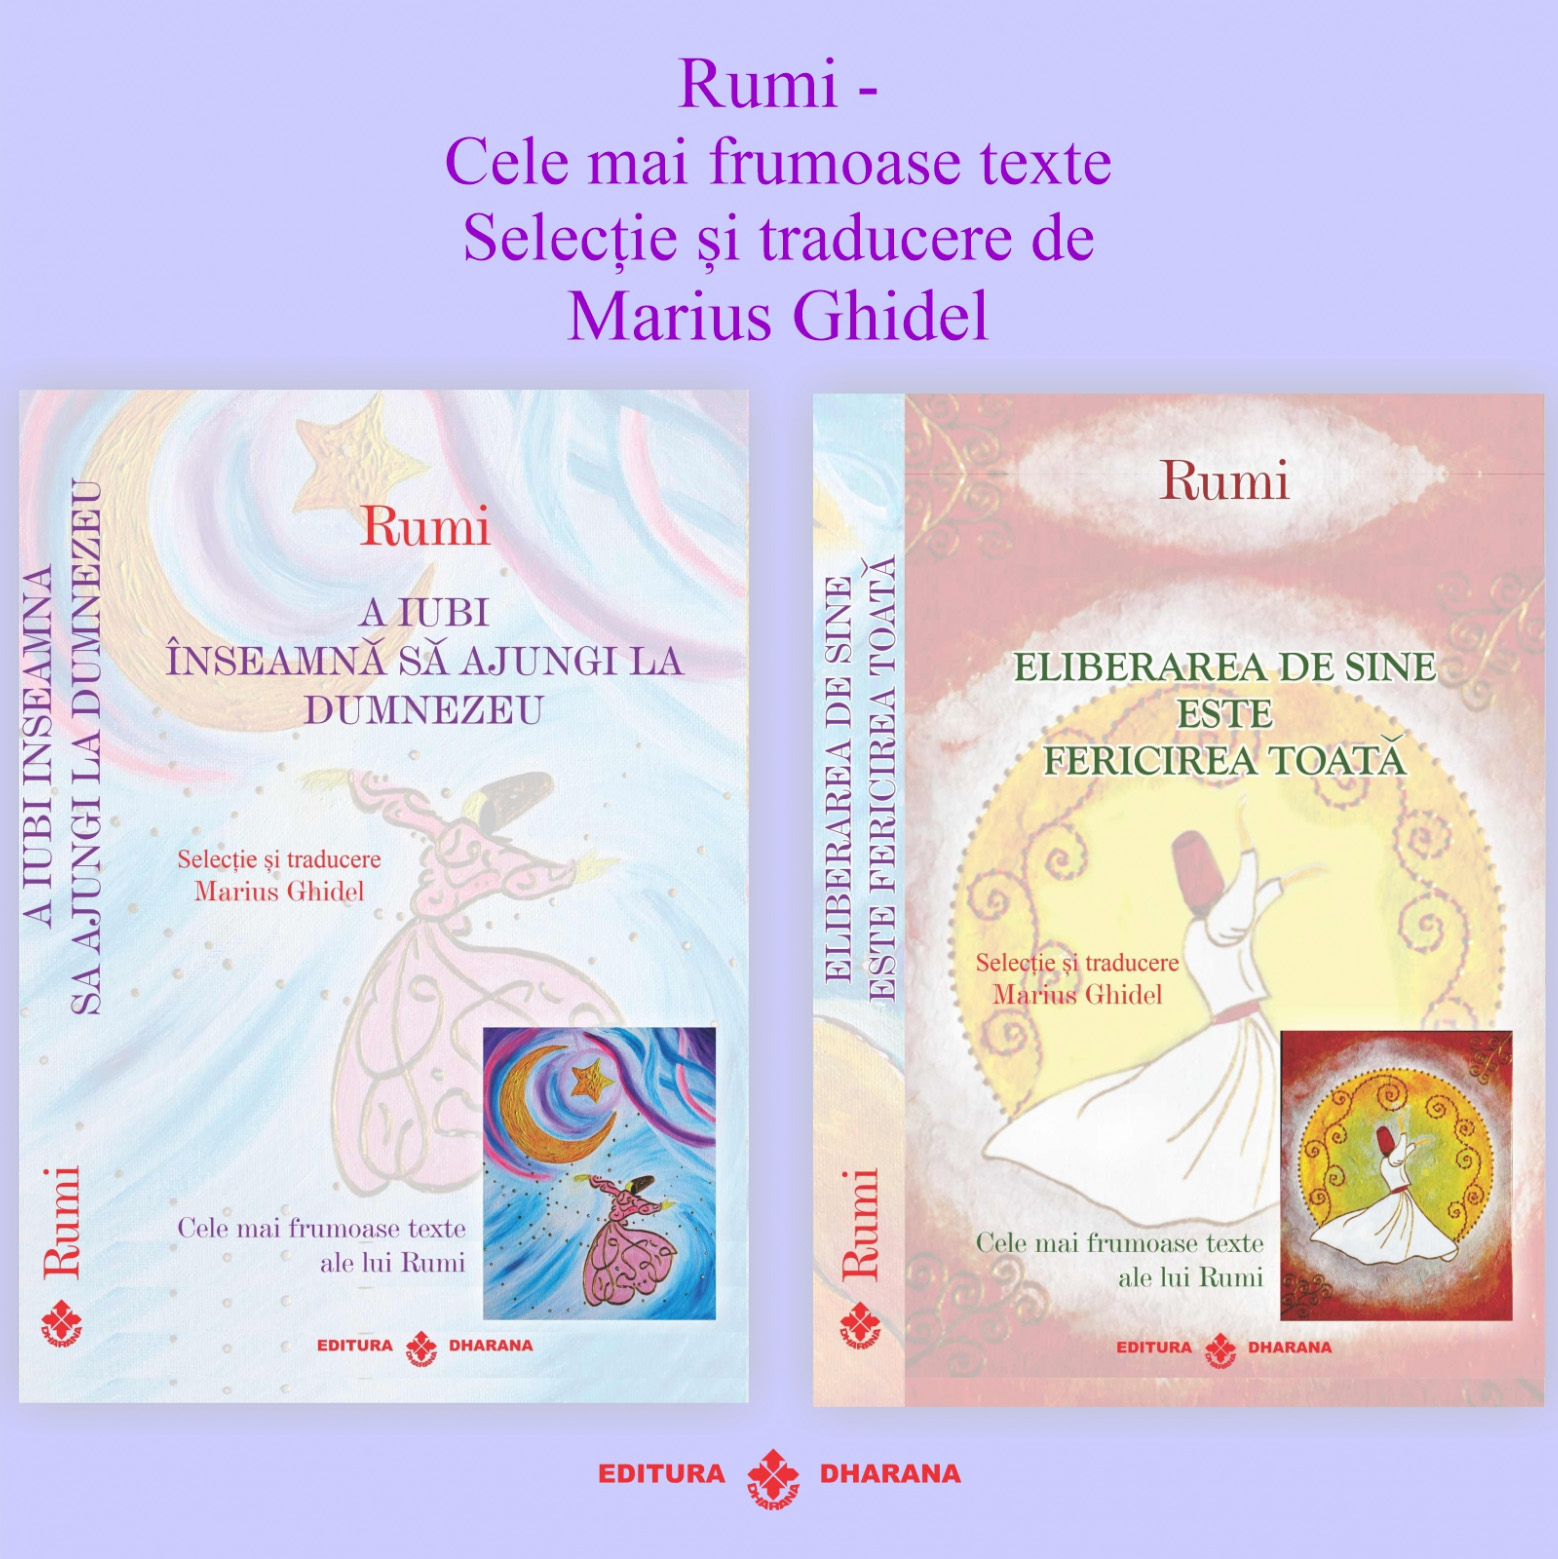 Set carti Rumi – Cele mai frumoase texte: A iubi inseamna sa ajungi la Dumnezeu / Eliberarea de sine este fericirea toata | Rumi carturesti.ro